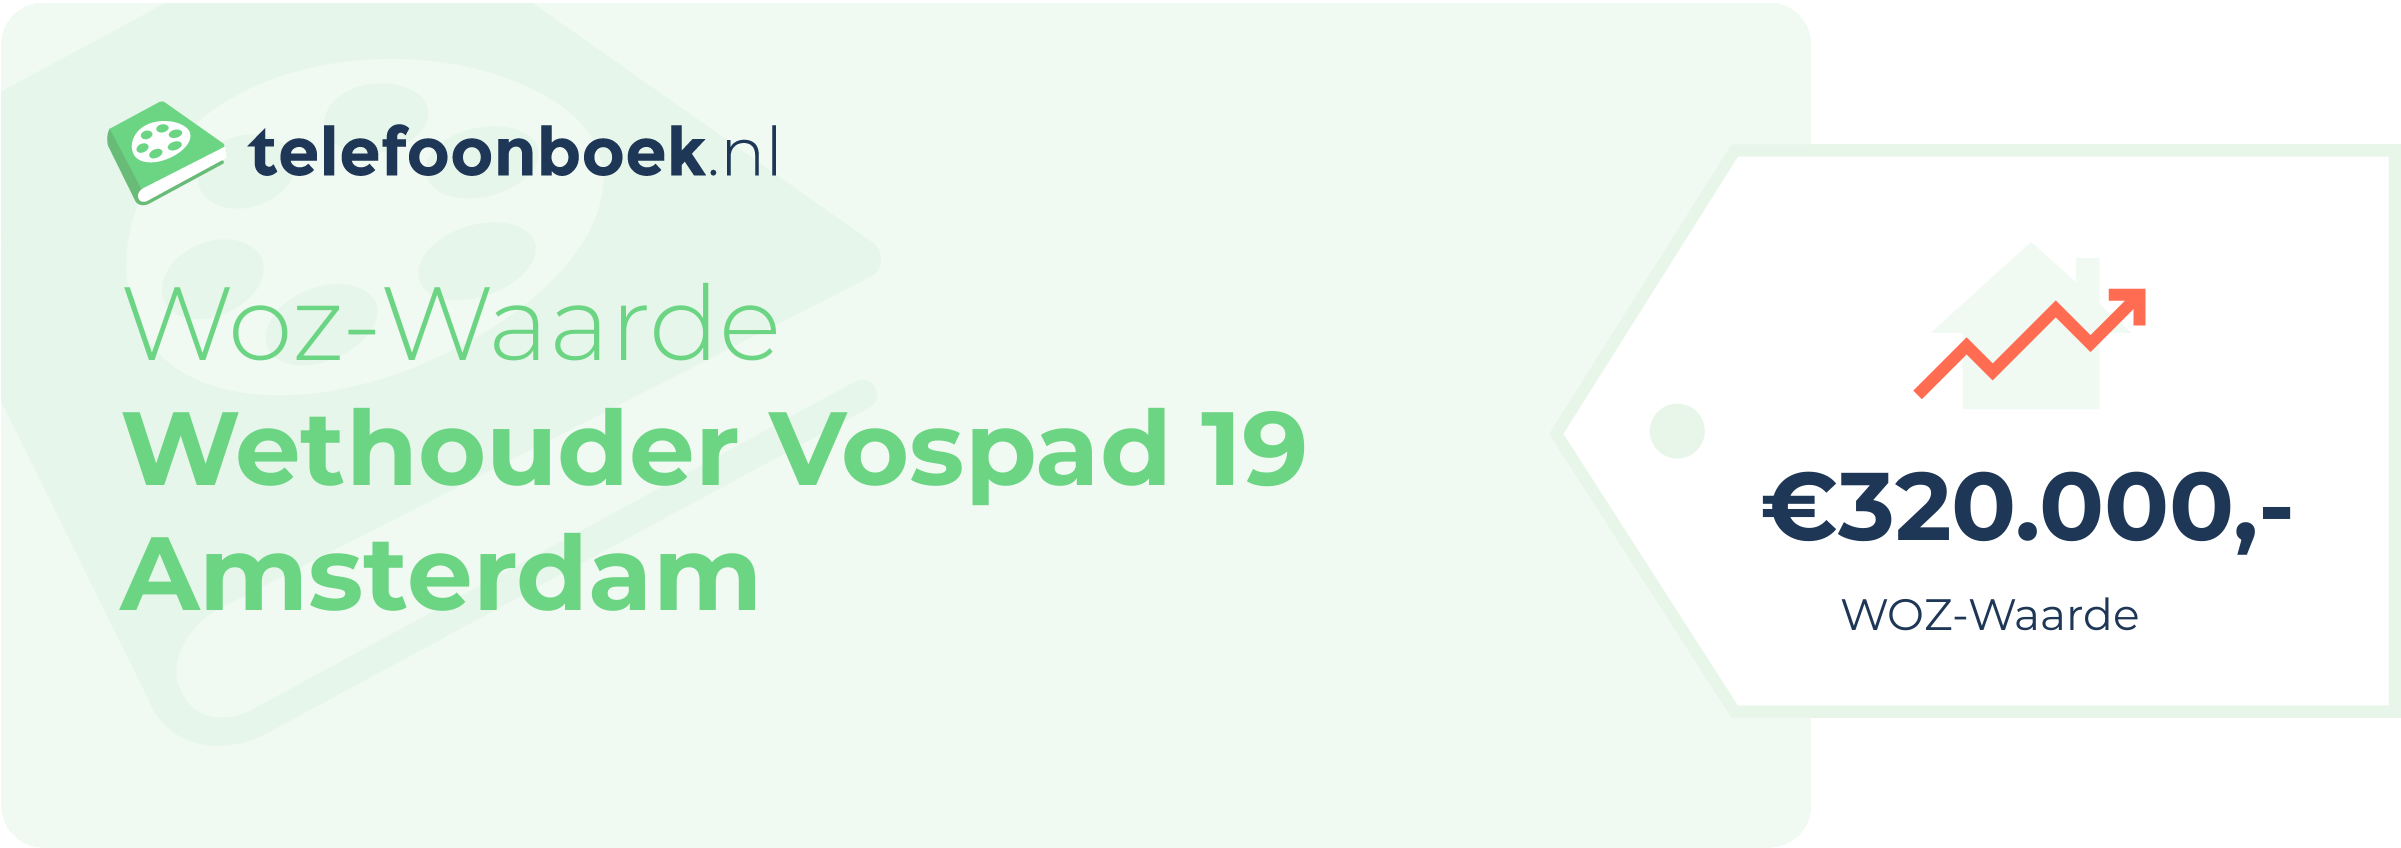 WOZ-waarde Wethouder Vospad 19 Amsterdam